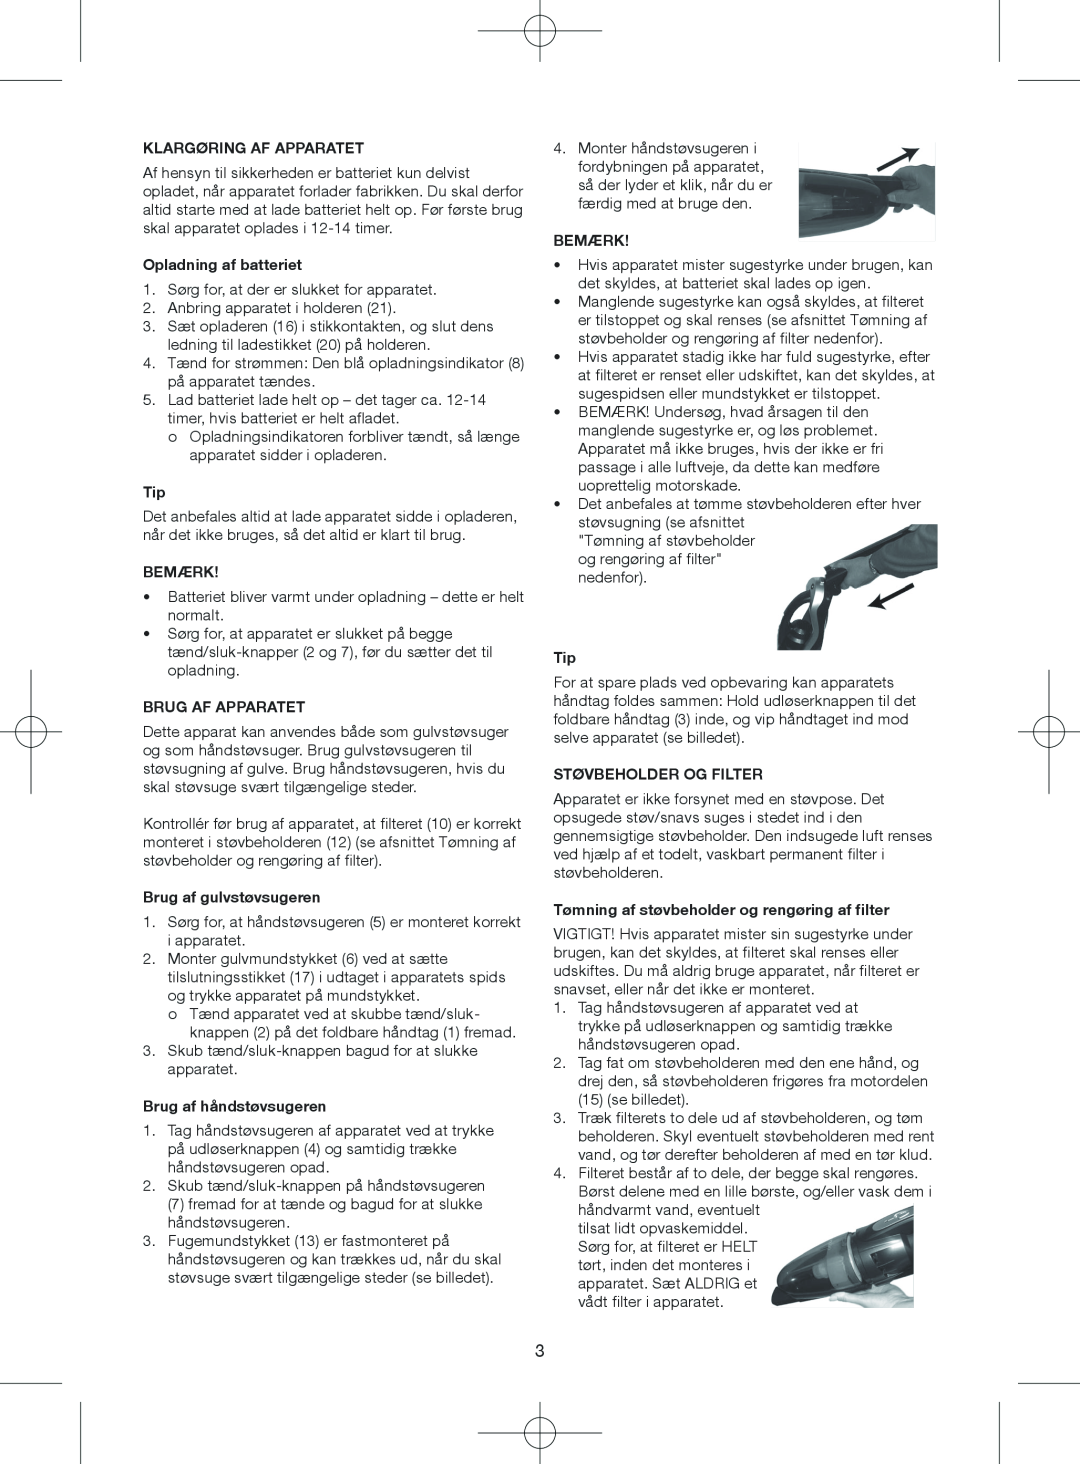 Melissa 640-075 manual Klargøring Af Apparatet, Opladning af batteriet, Bemærk, Brug Af Apparatet, Brug af gulvstøvsugeren 